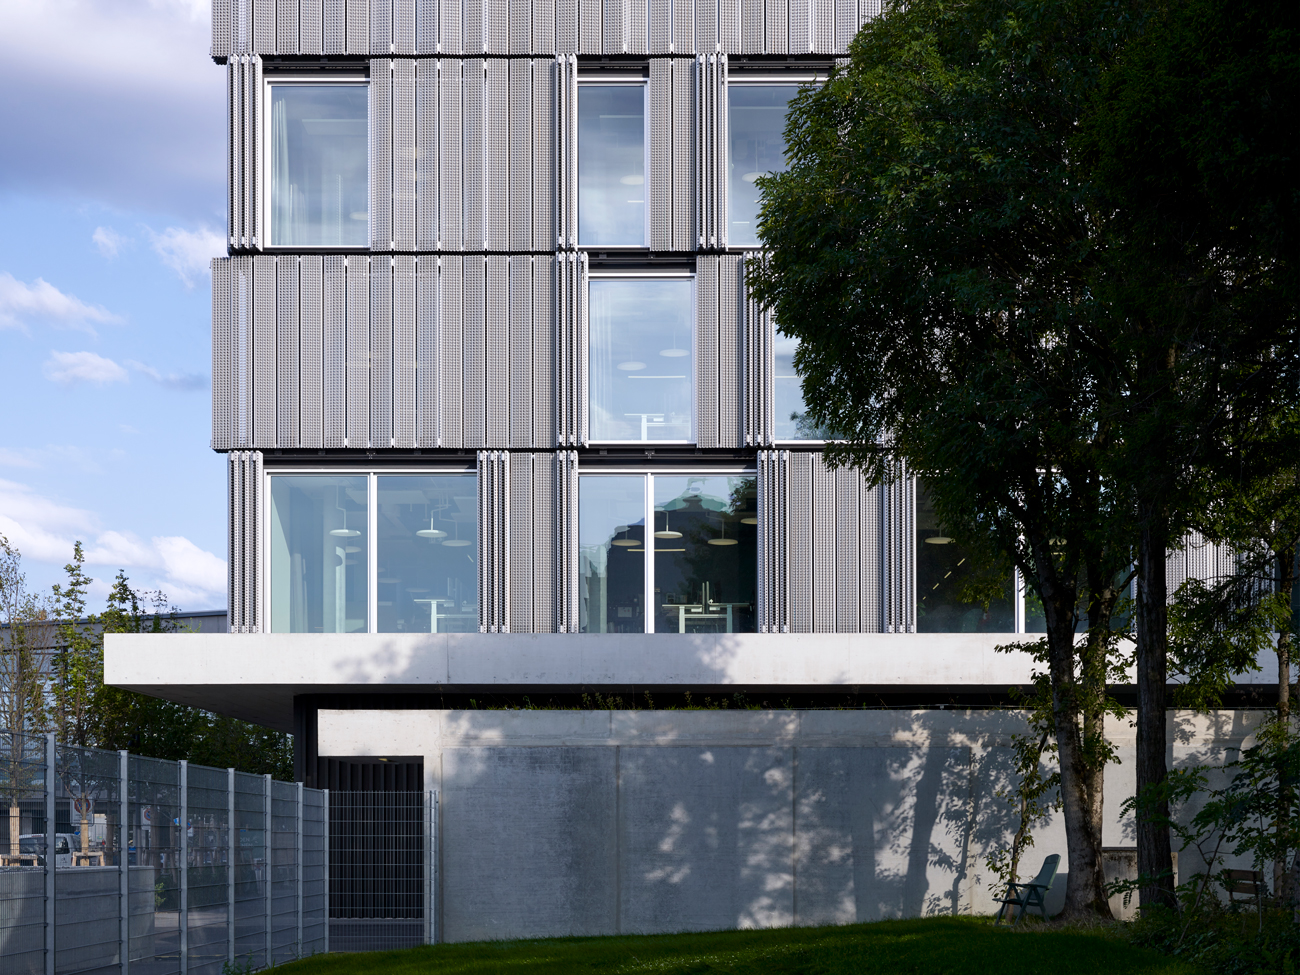 Exterior designed by Herzog & de Meuron